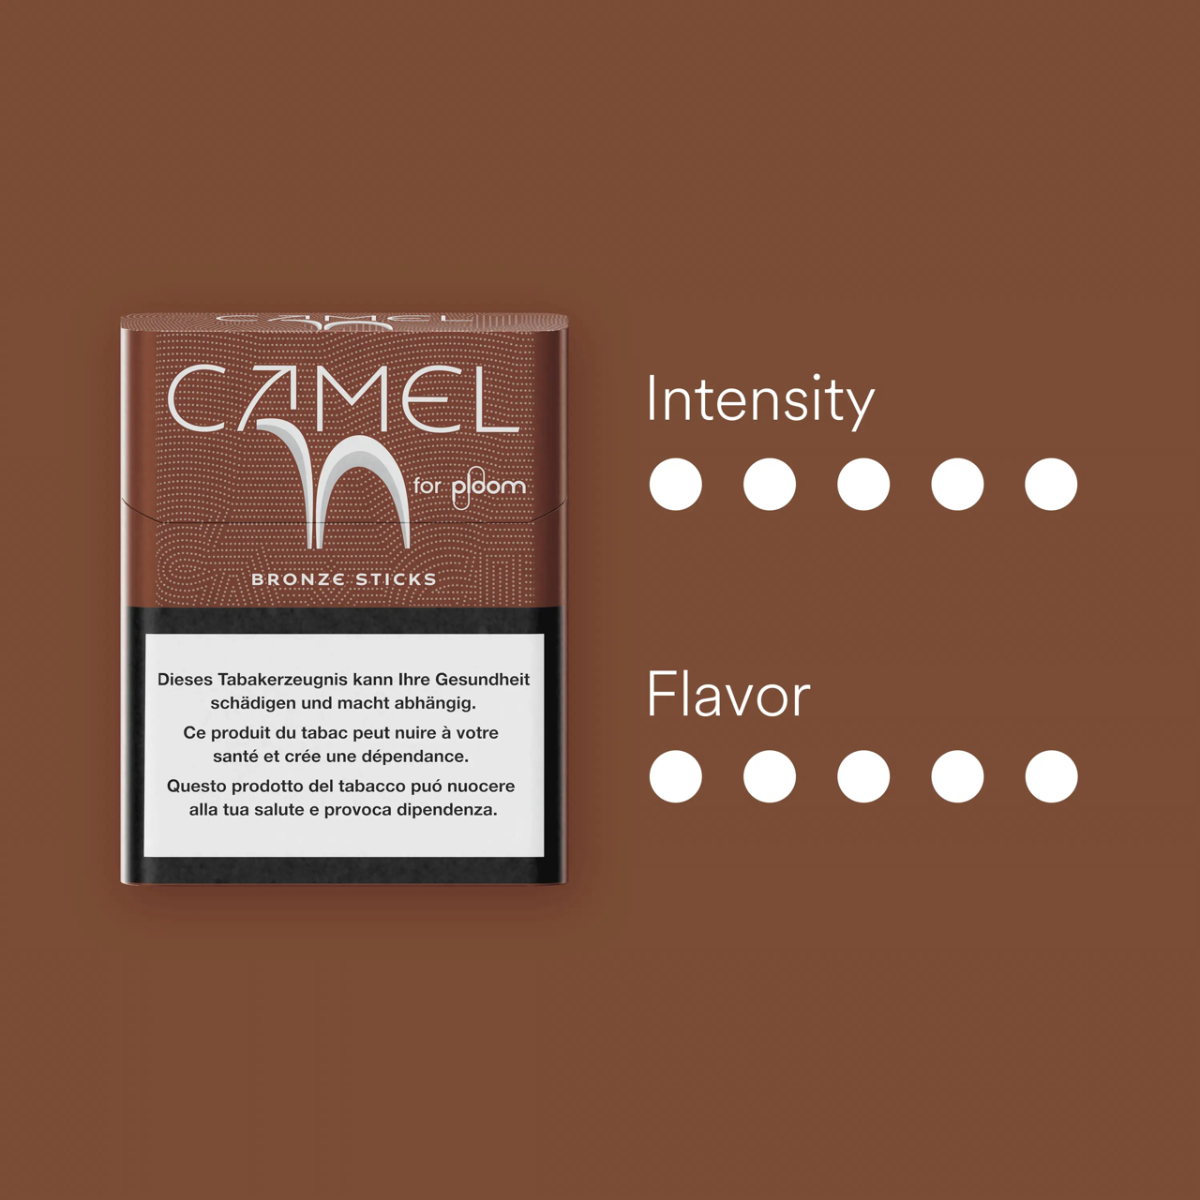 Camel Bronze sticks intensité
